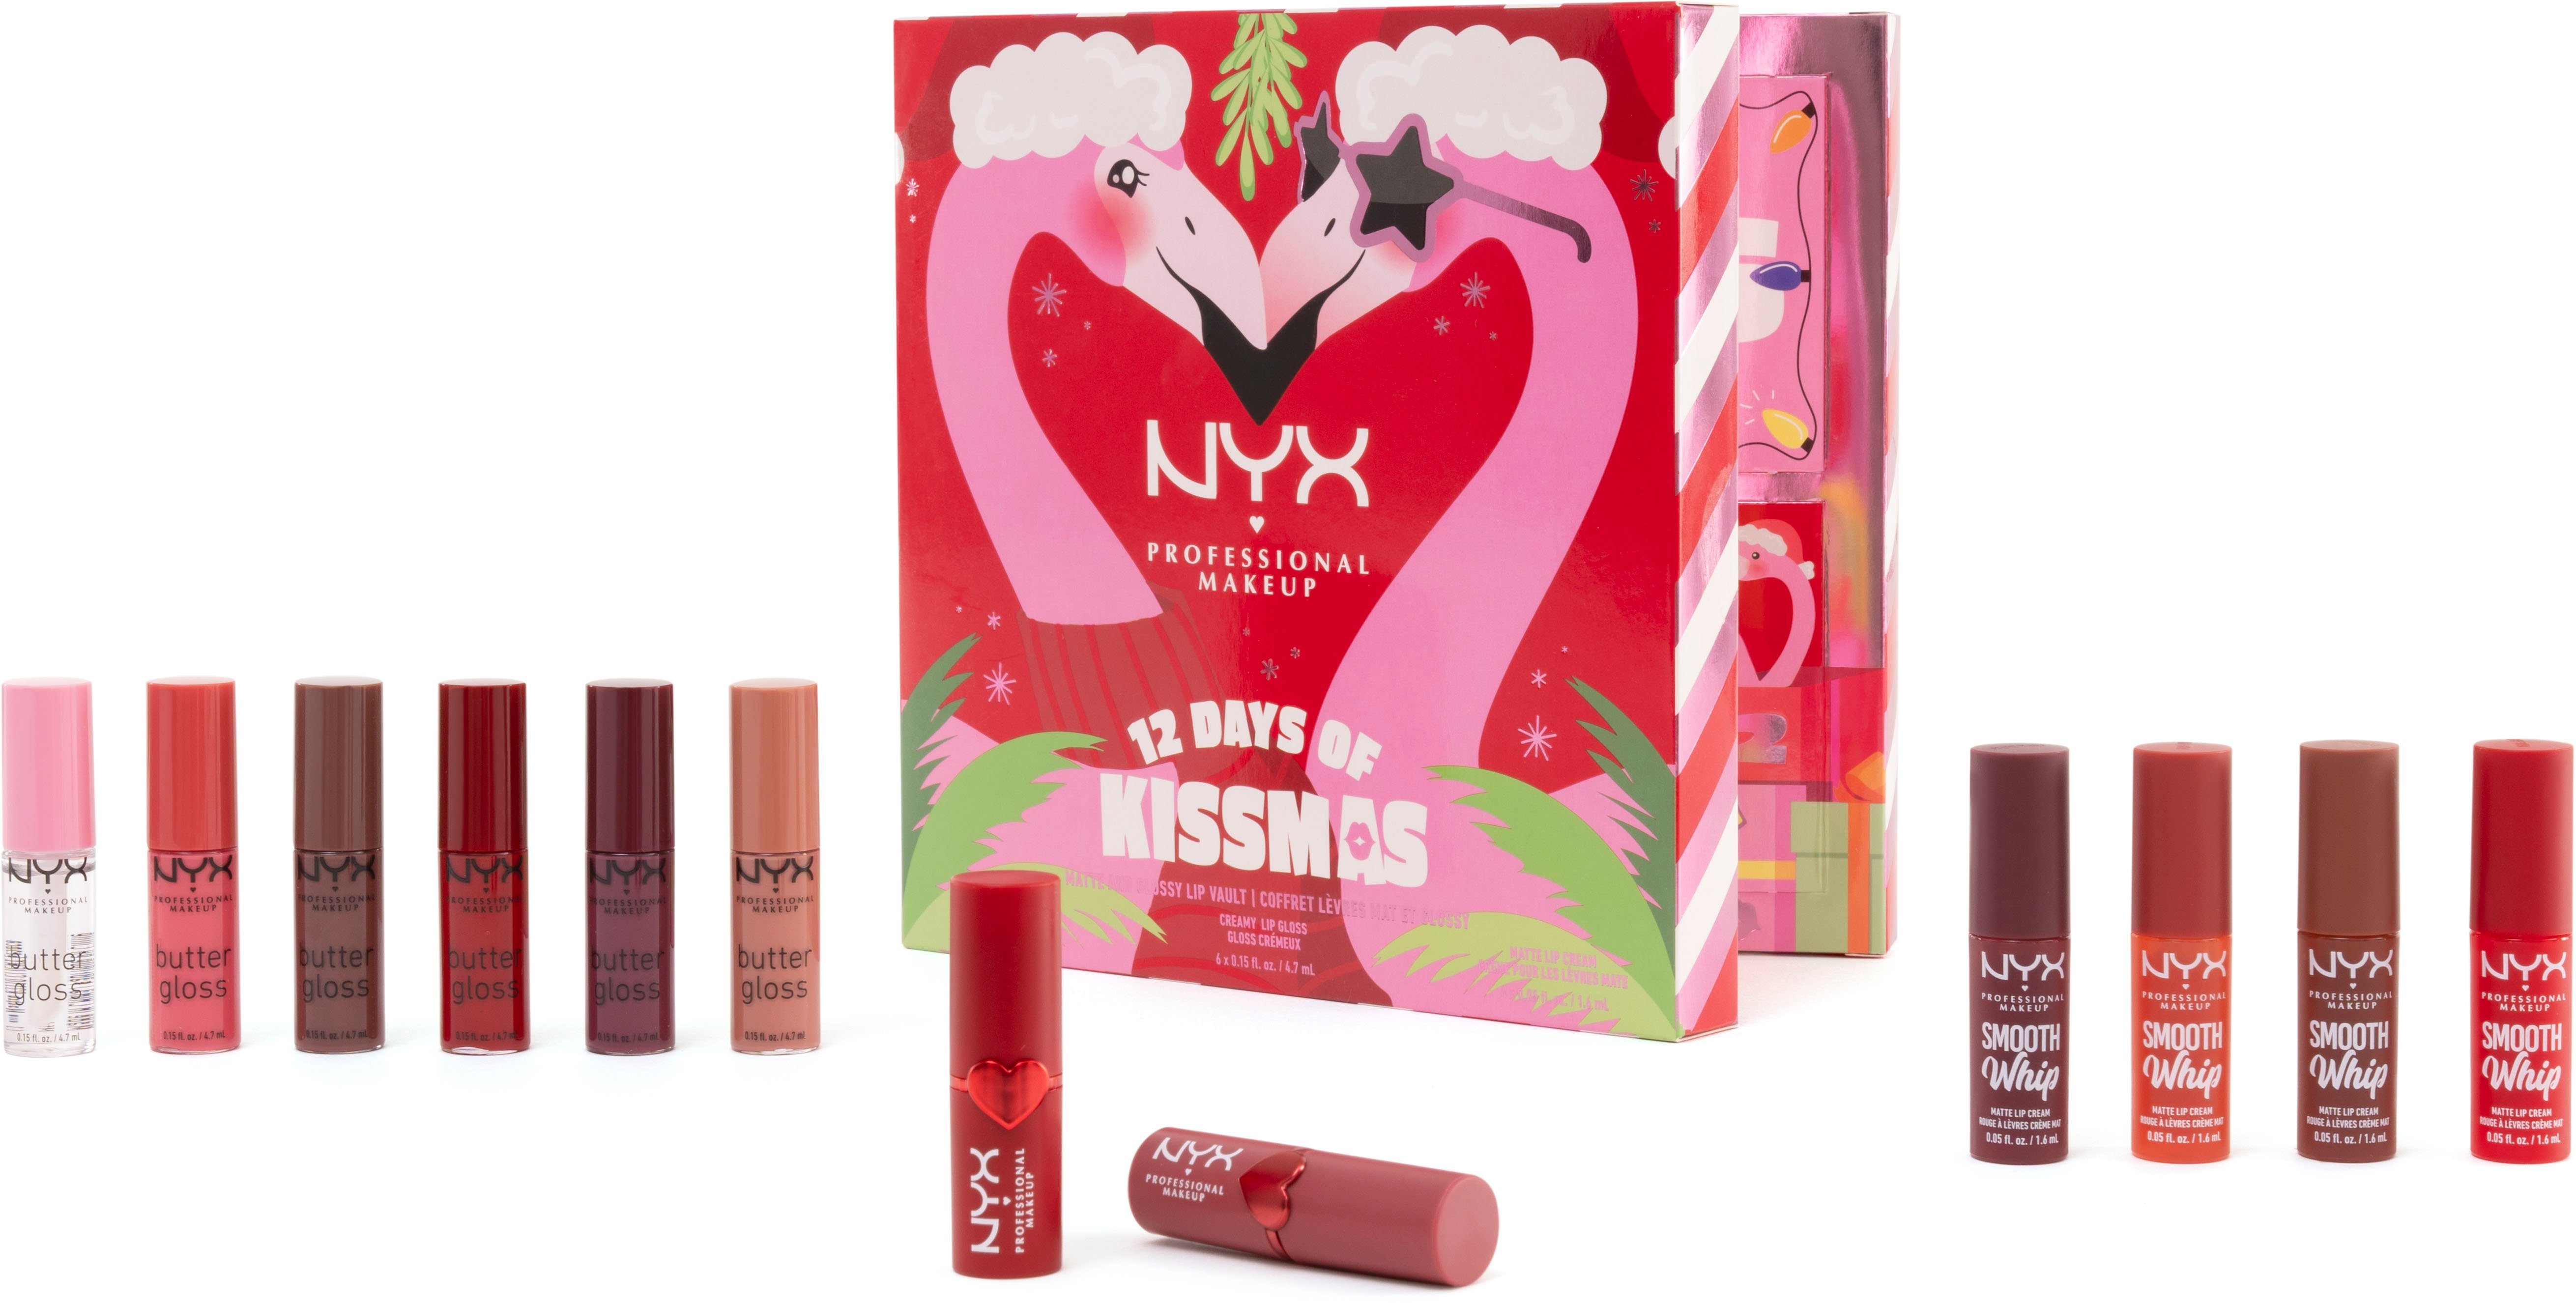 Professional of Days NYX Makeup (12-tlg) Adventskalender 12 Kissmas NYX